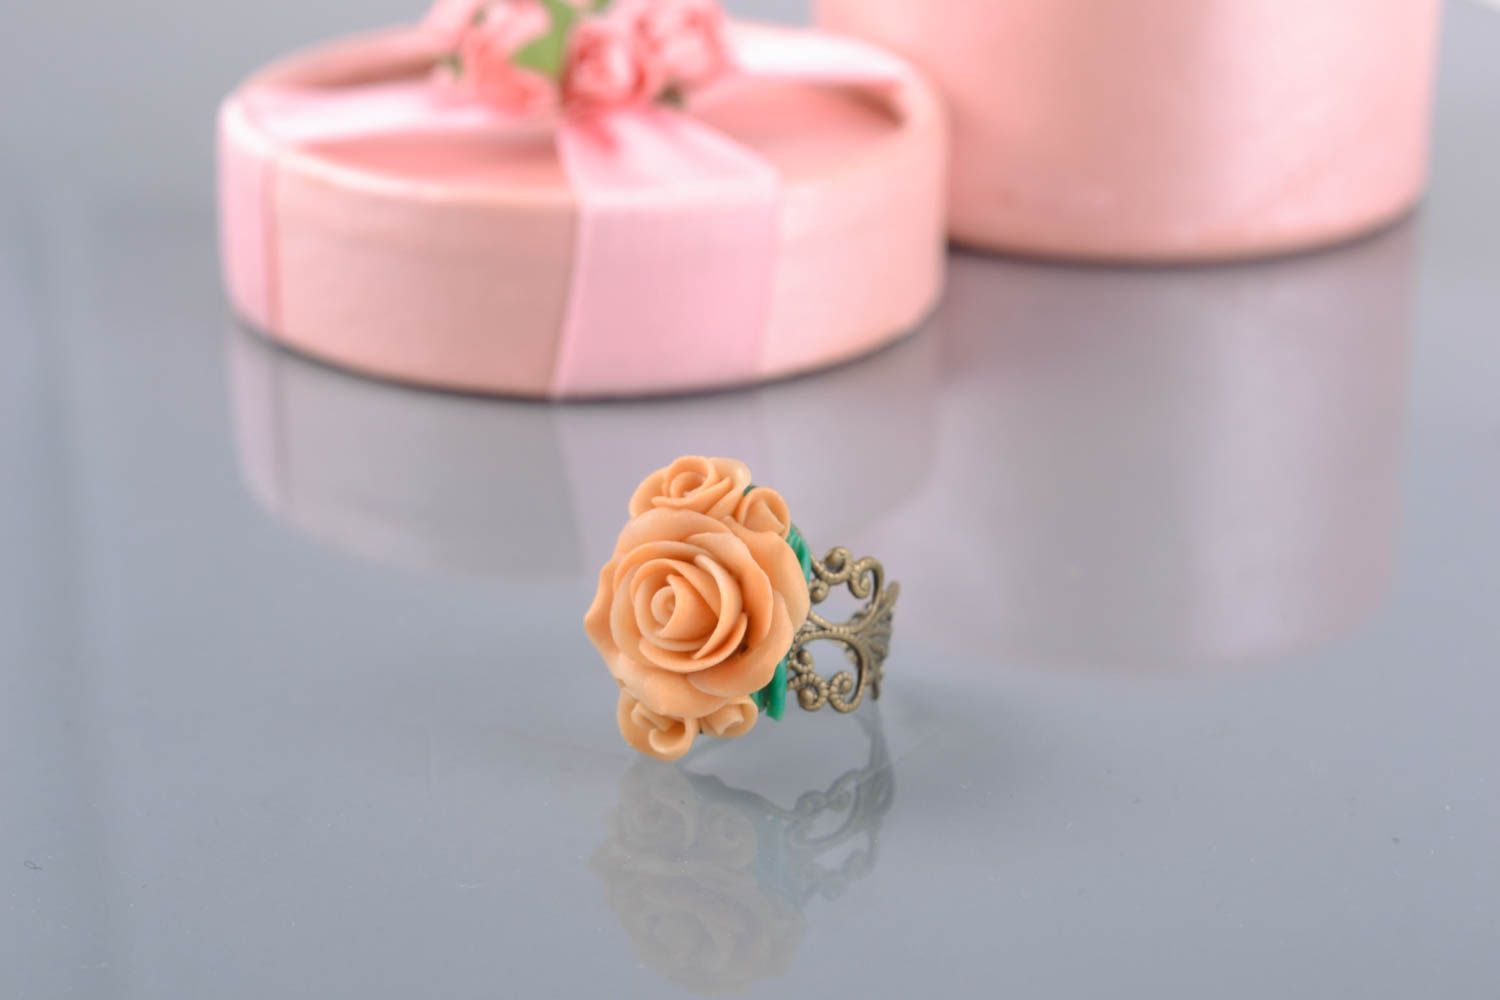 Кольцо цветок из полимерной глины красивое оригинальное  фото 1